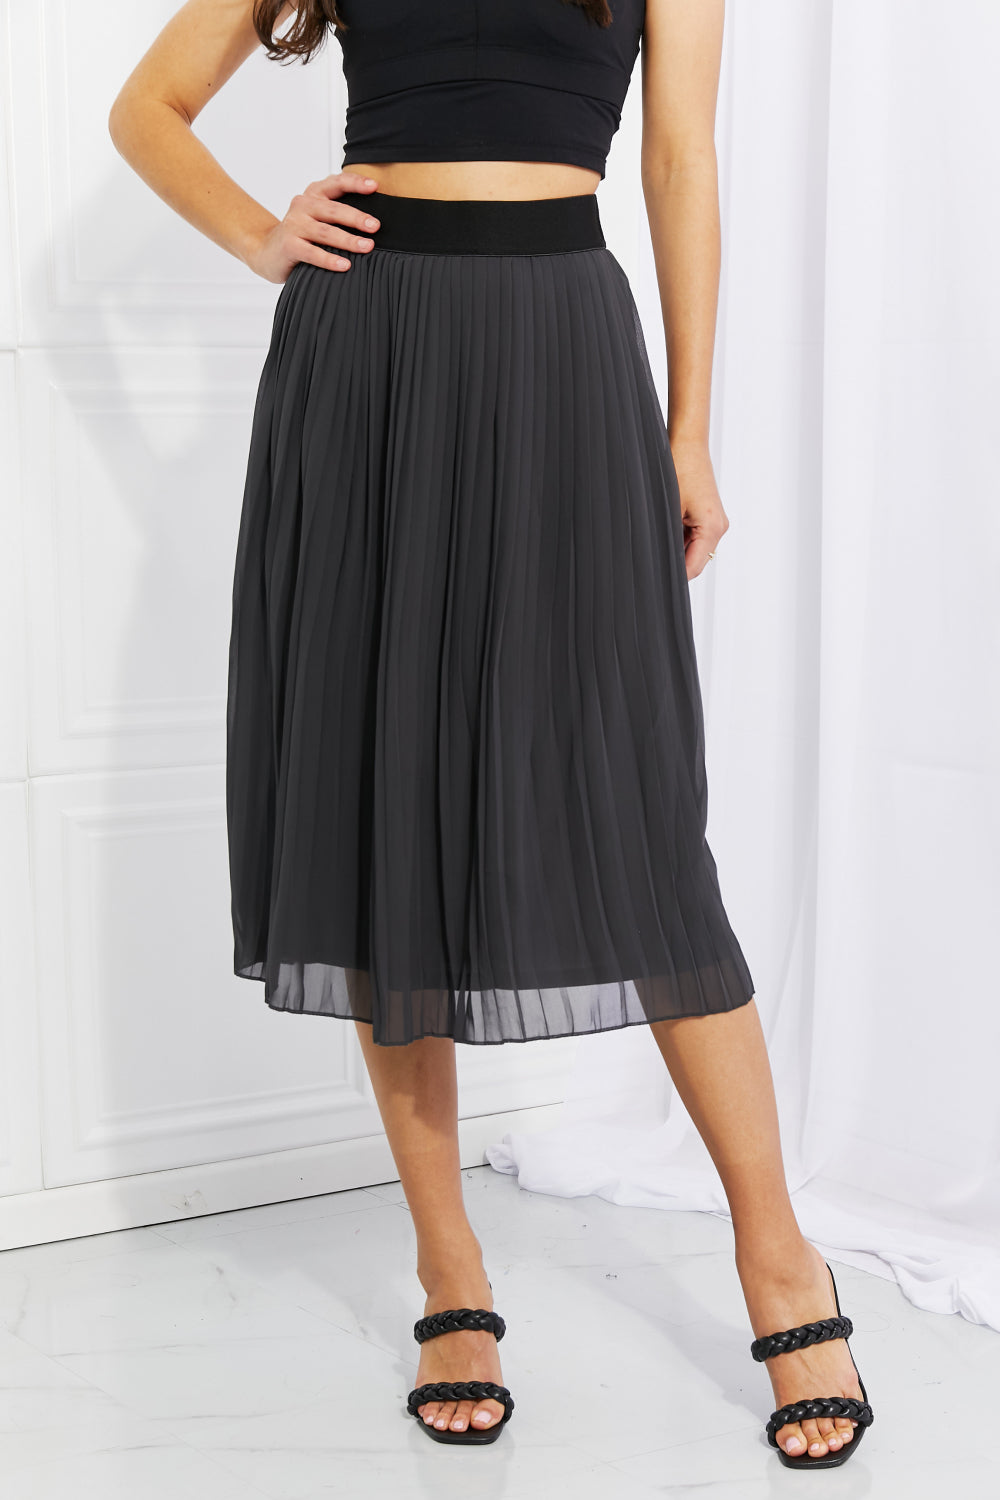 Zenana Pleated Chiffon Midi Skirt Knee-Length Skirts RYSE Clothing Co. Dark Gray S 